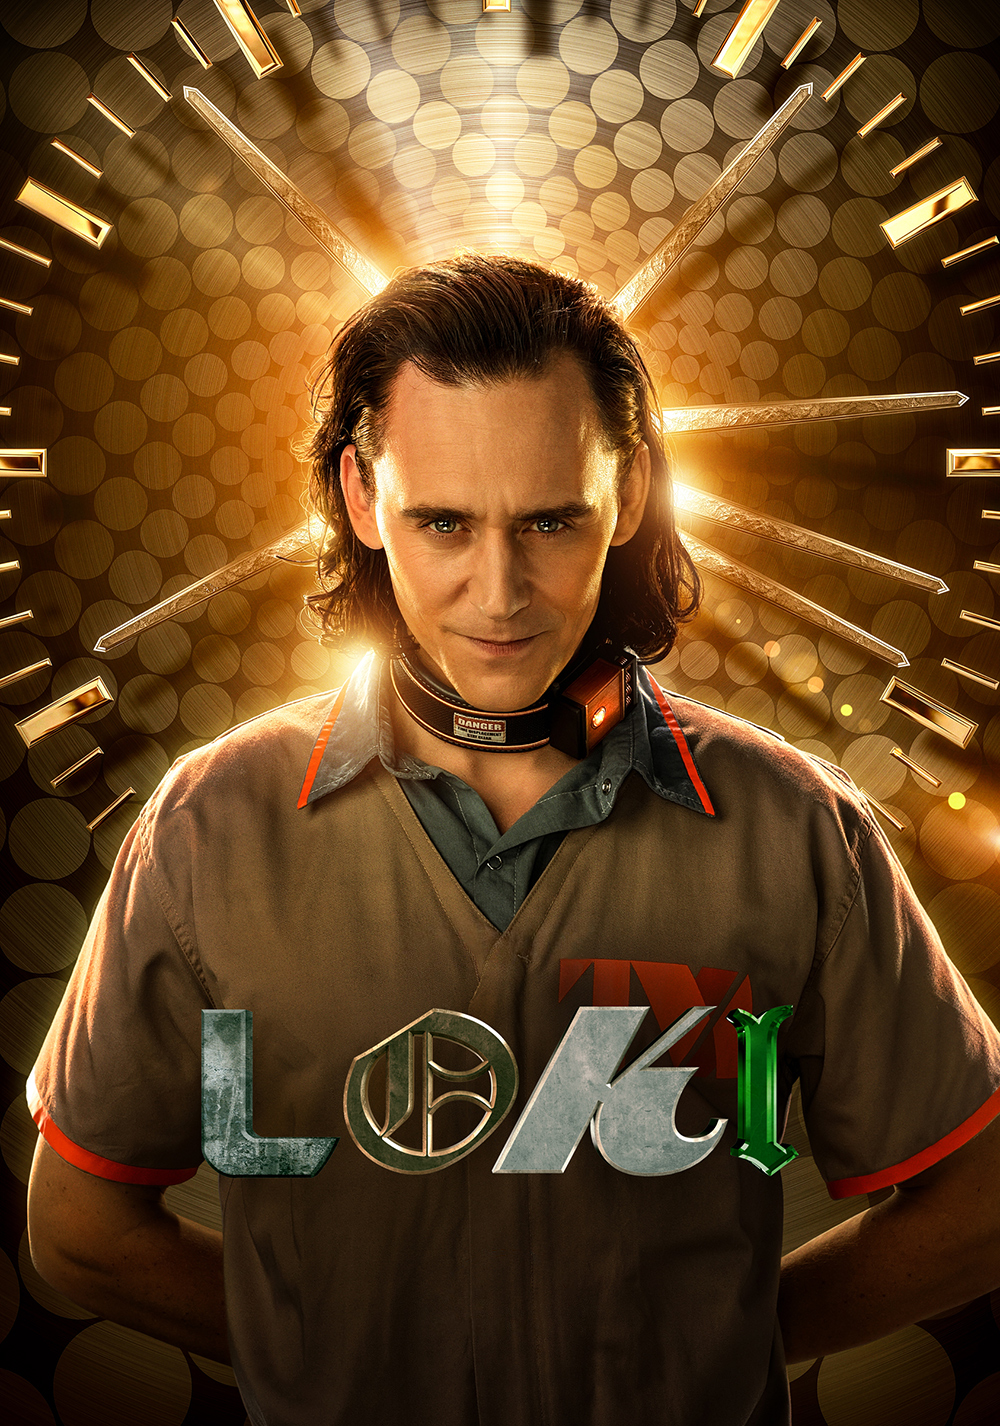 Loki - S01E06 - For All Time. Always 1080p [EN-NL Subs] [Seizoensfinale]